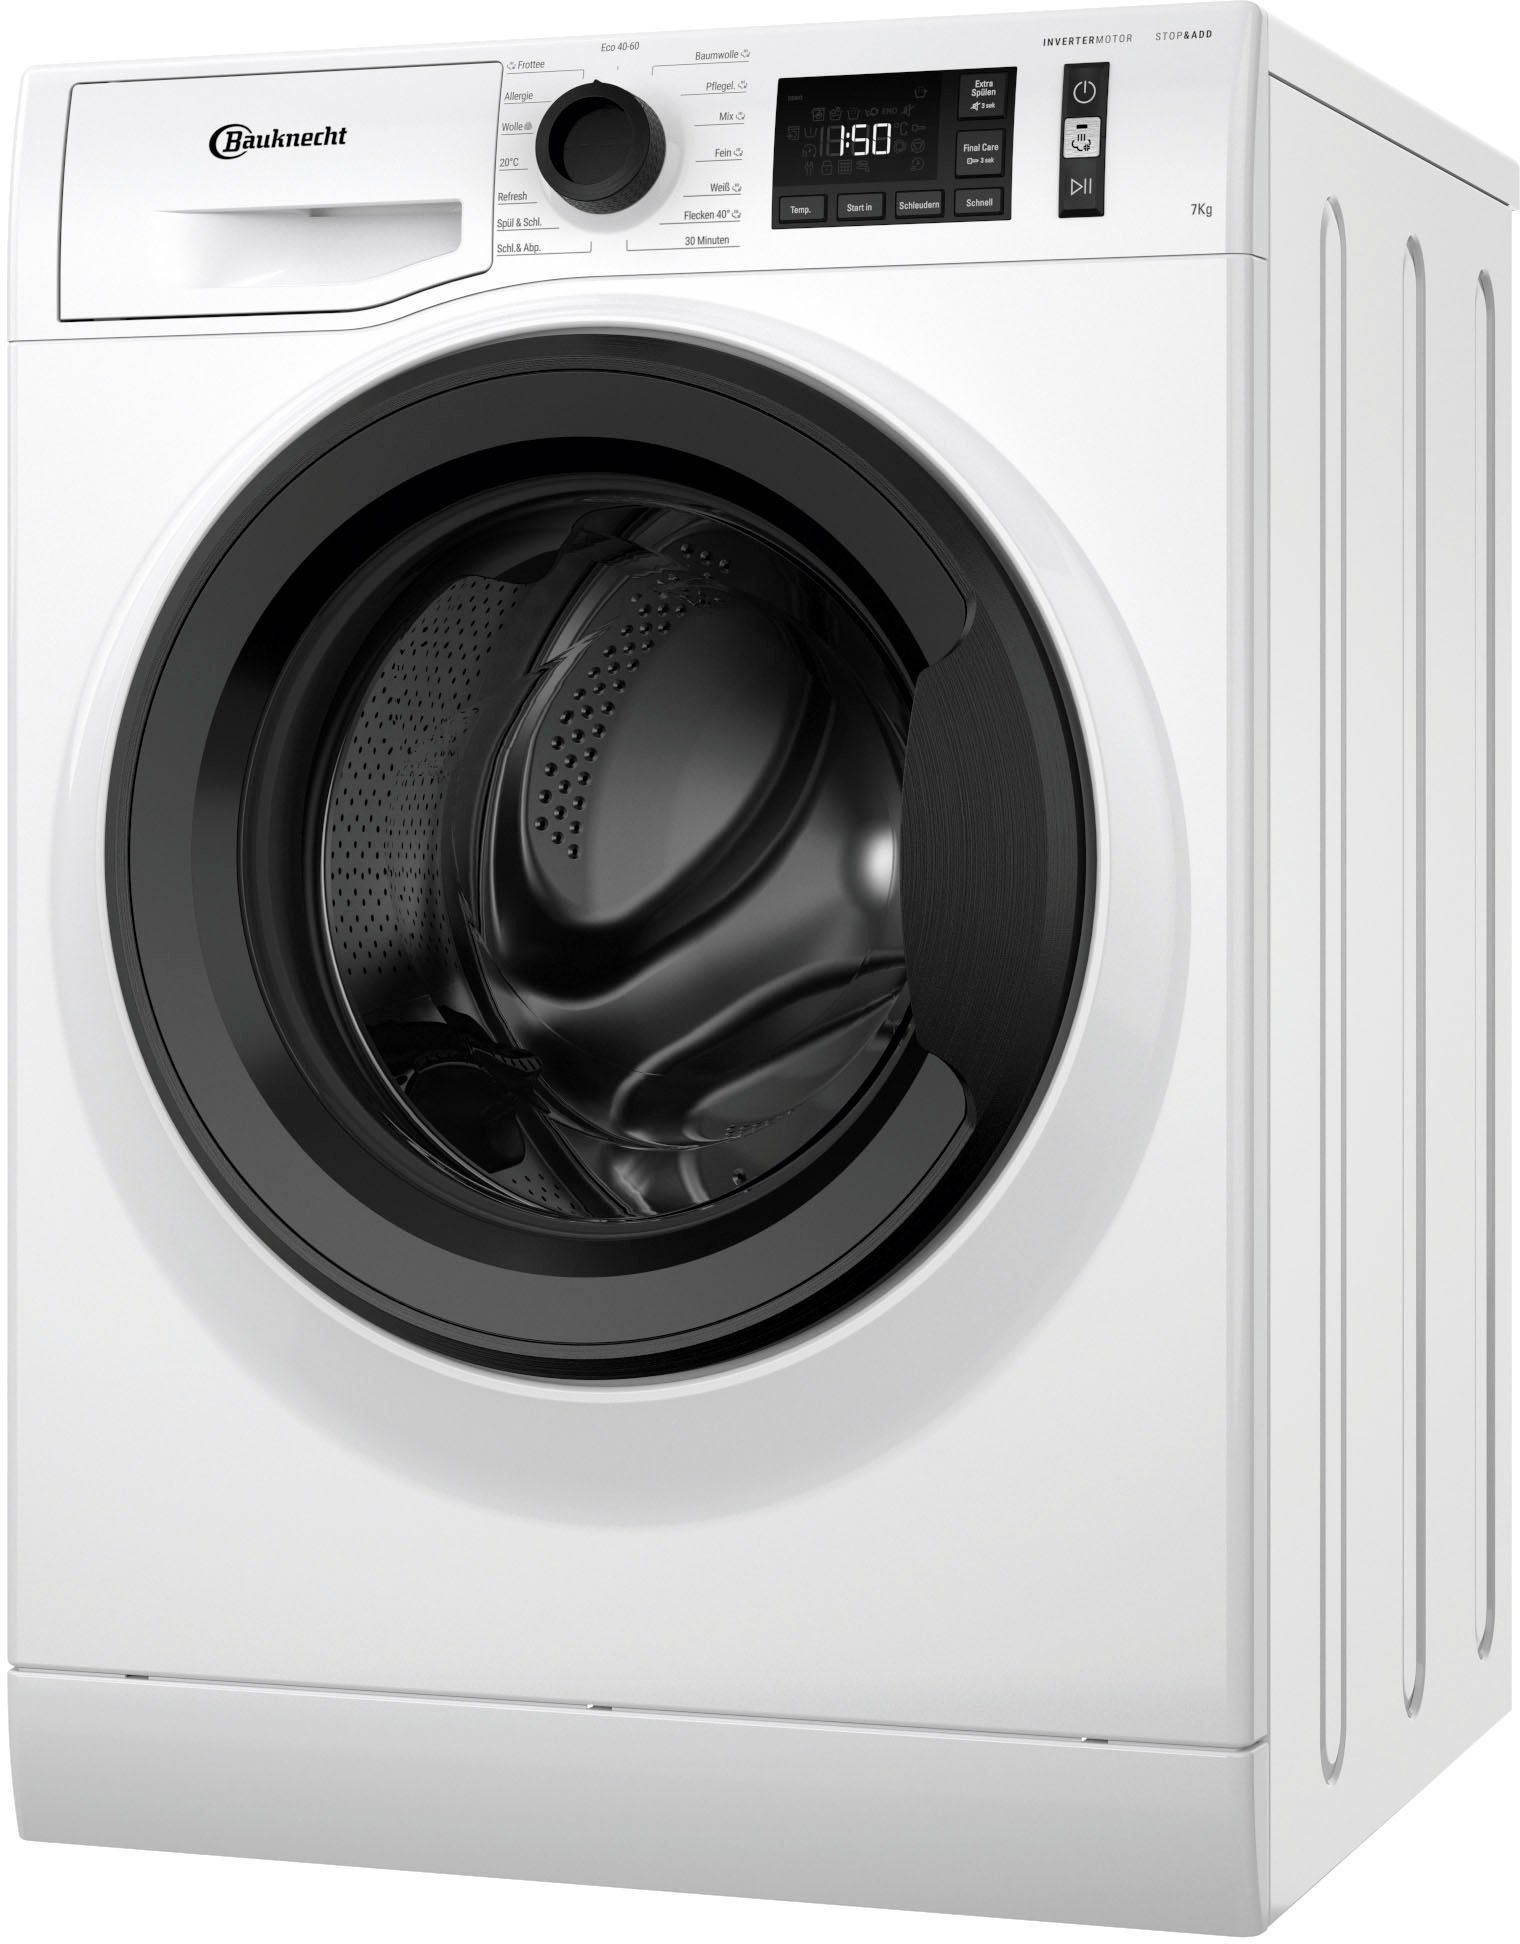 7 BAUKNECHT Elite Waschmaschine WM 711 U/min 1400 CC, kg,